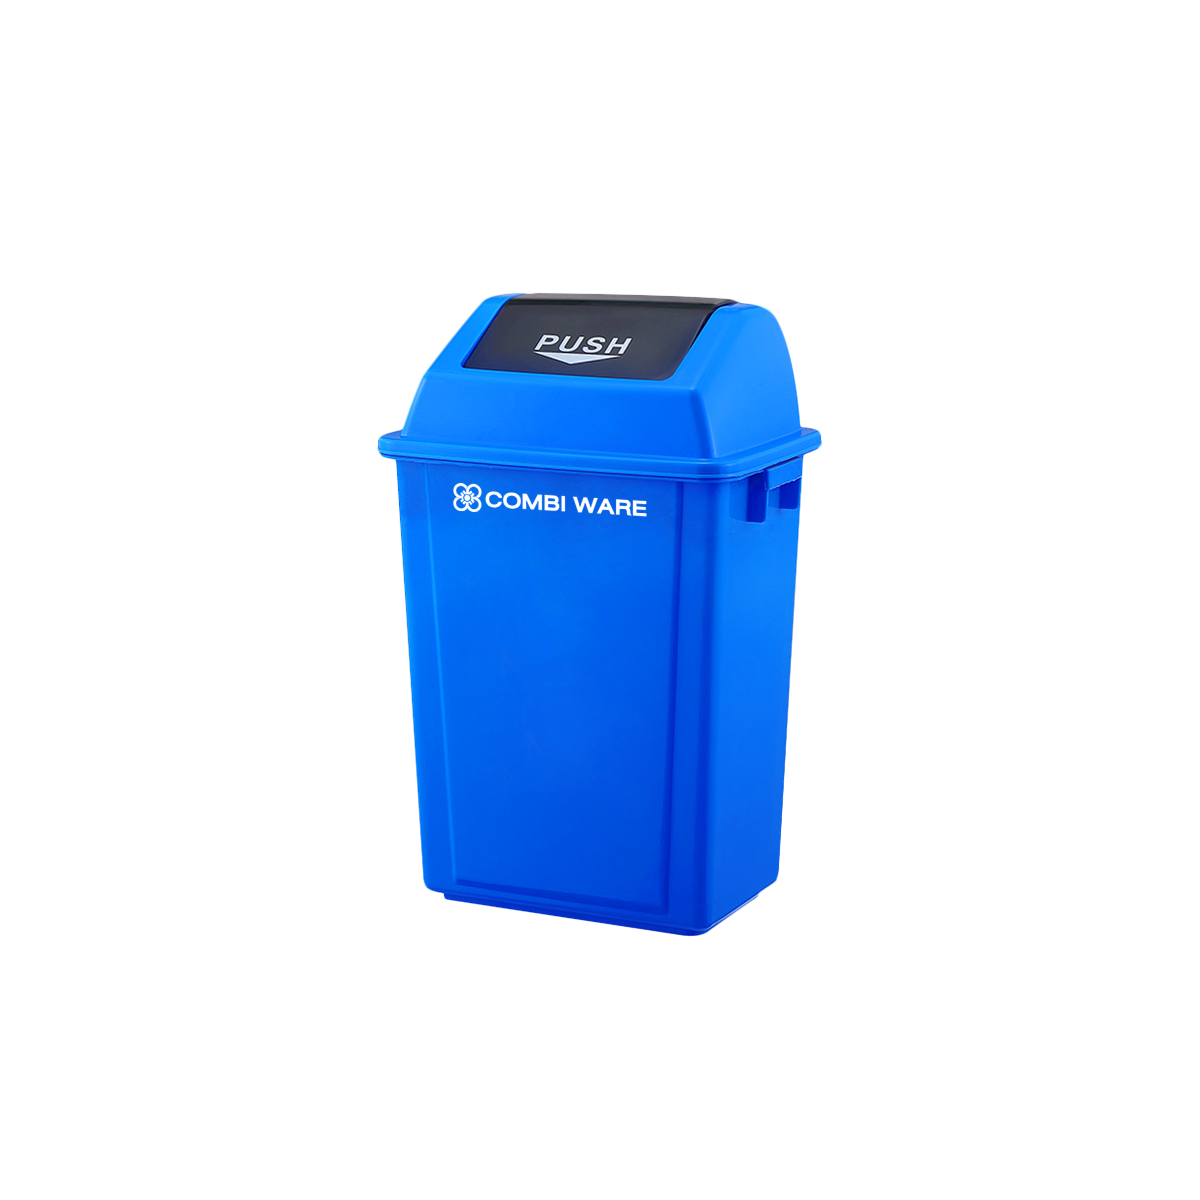 ถังขยะพลาสติก ขนาด 30 ลิตร แบบฝาผลัก สีน้ำเงิน